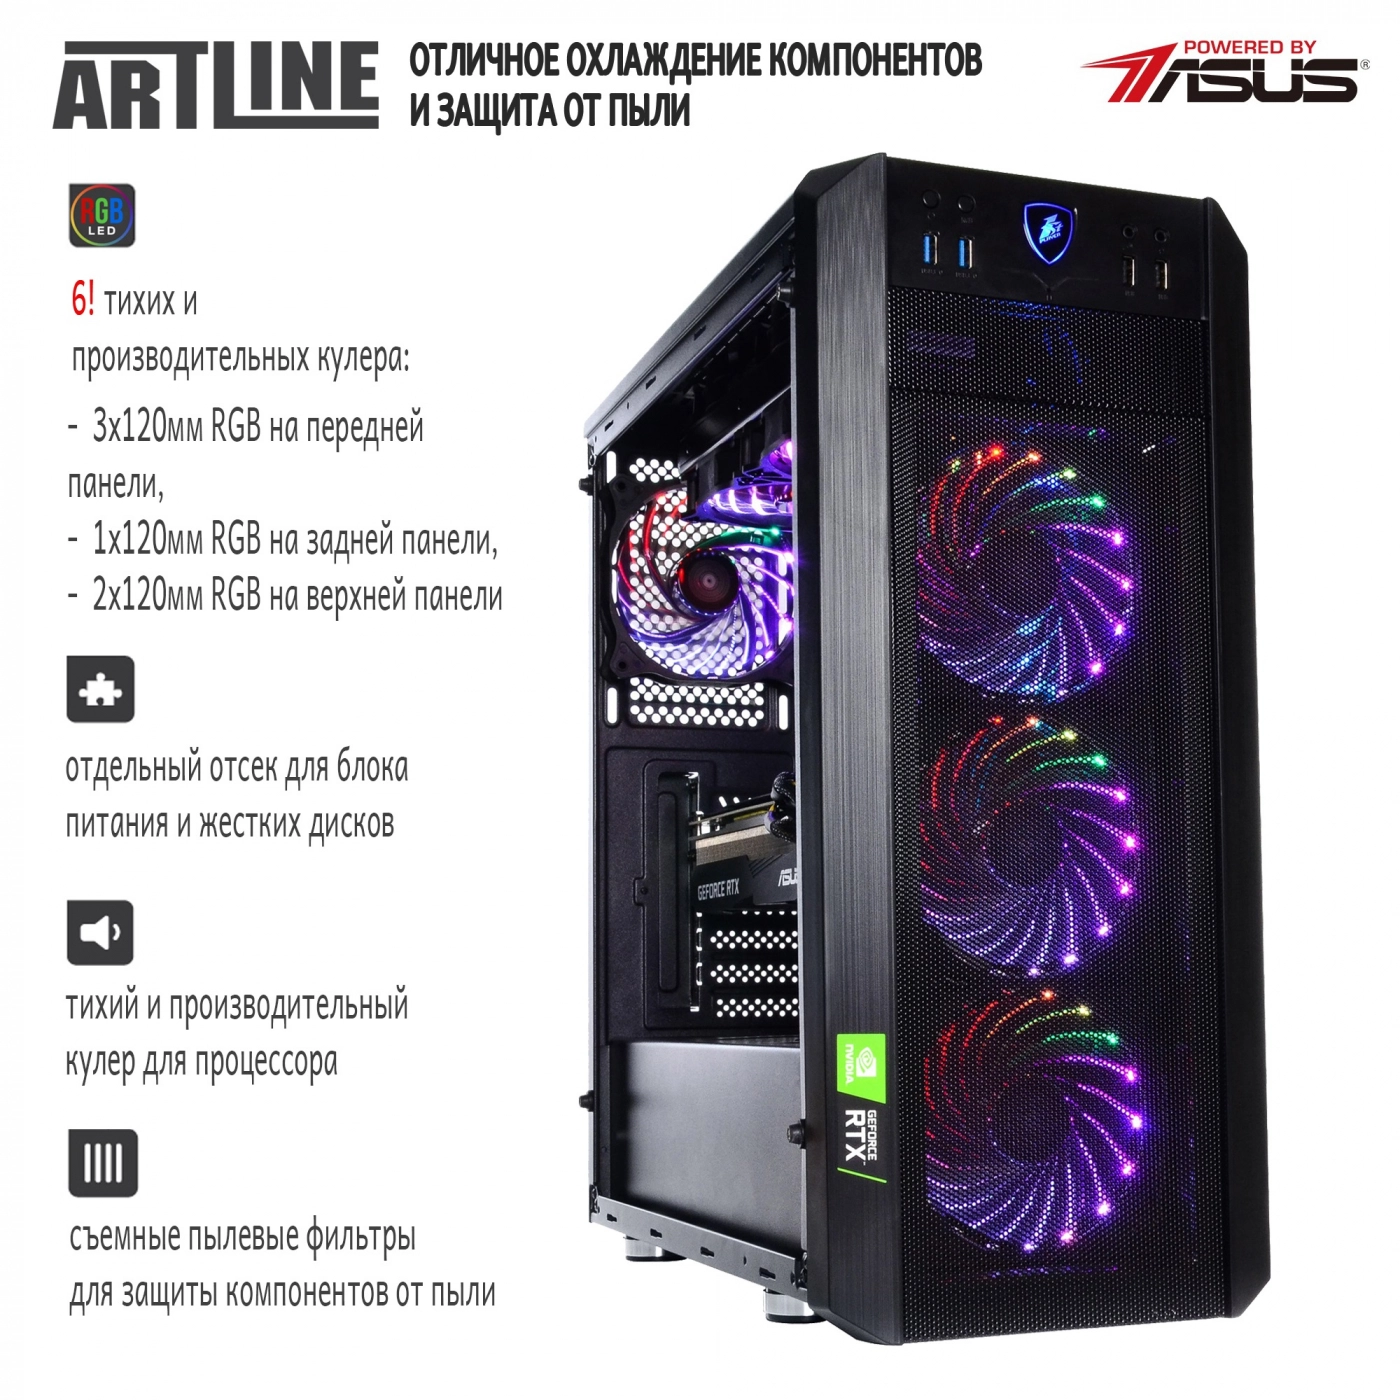 Купить Компьютер ARTLINE Gaming X97v36 - фото 2